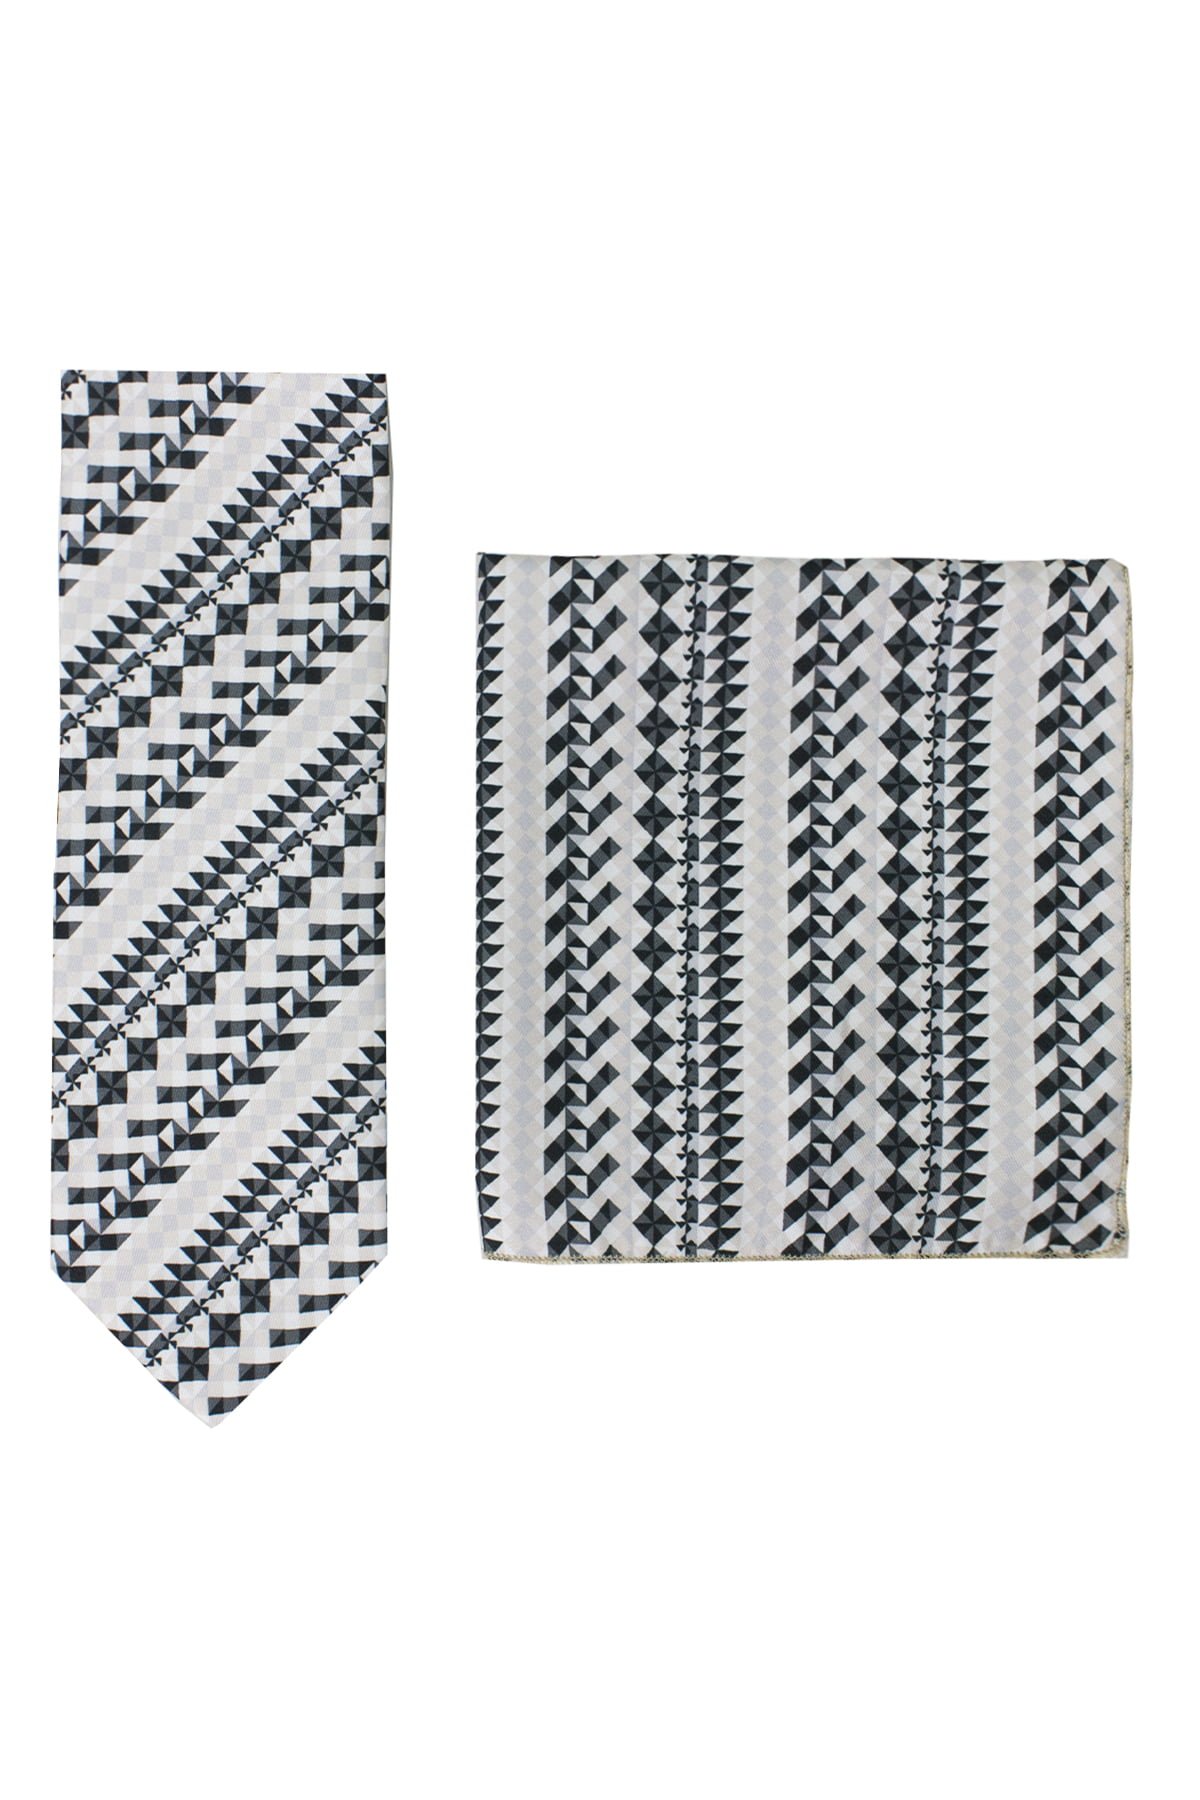 Cravatta uomo fantasia geomerico 1 compresa di pochette abbinata effetto seta